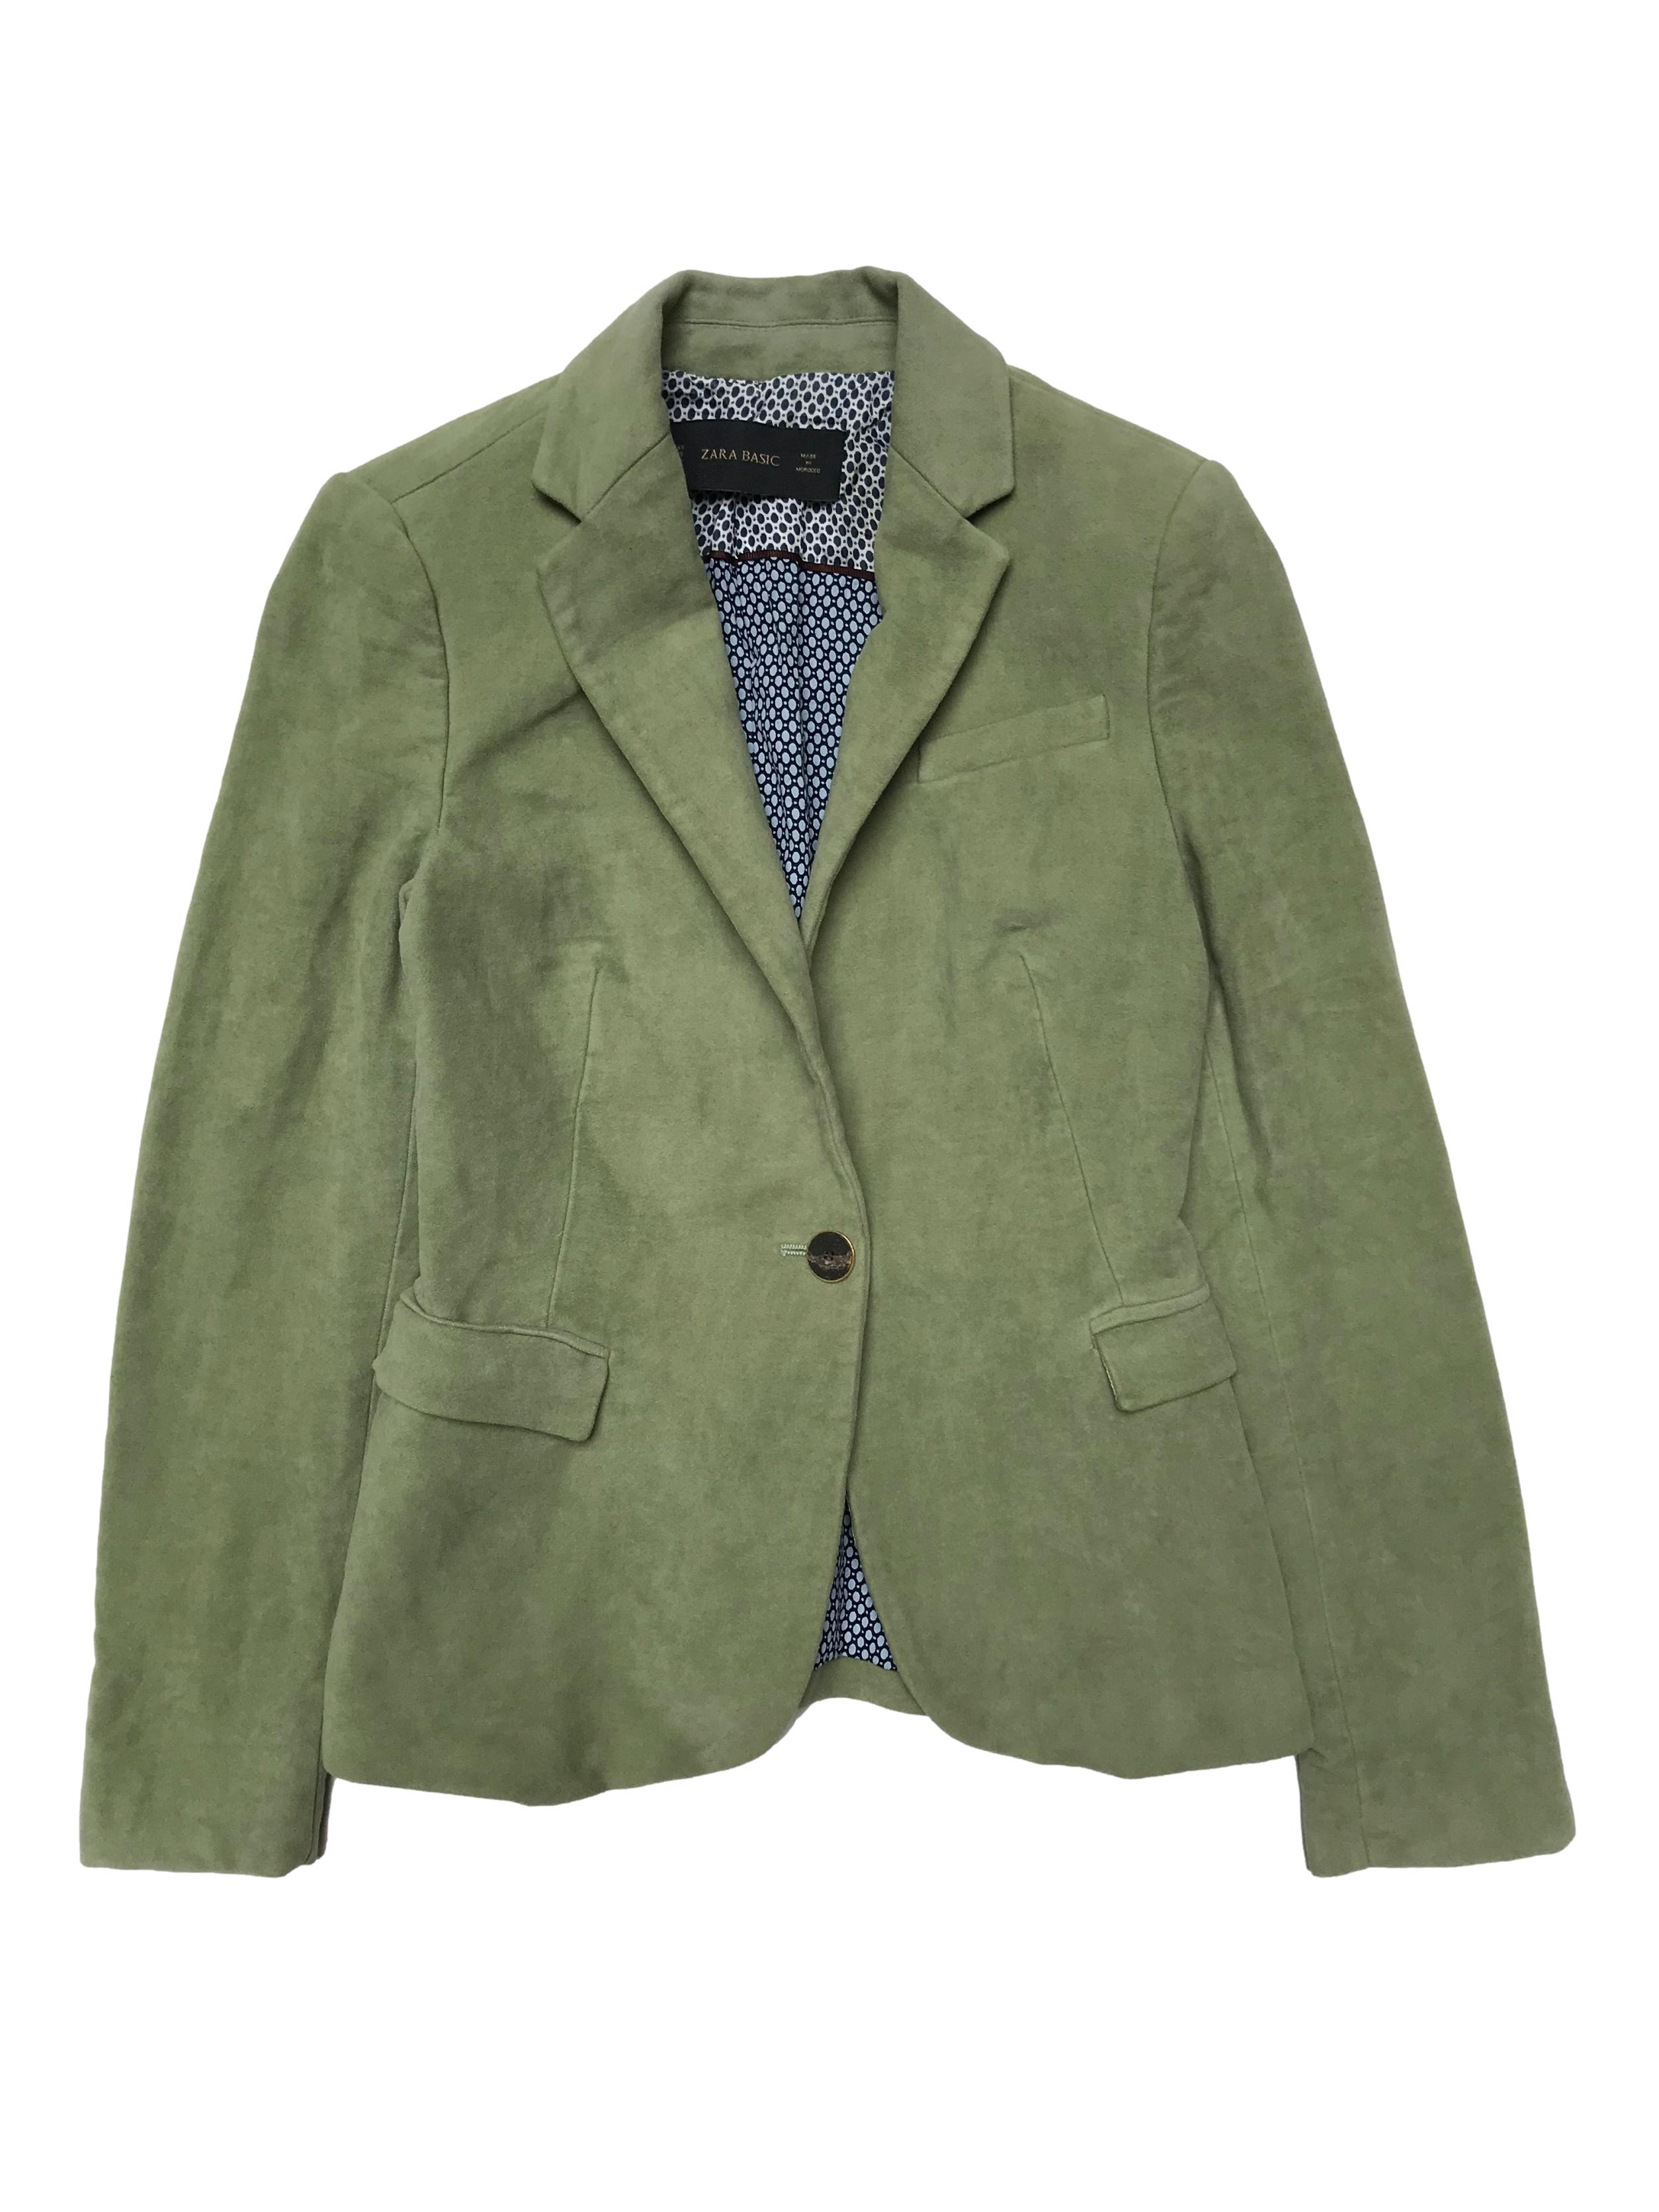 Blazer Zara de pana verde 100% algodón con coderas marrones, tiene forro, de un solo botón. Busto 85cm Largo 56cm. Precio original S/ 219